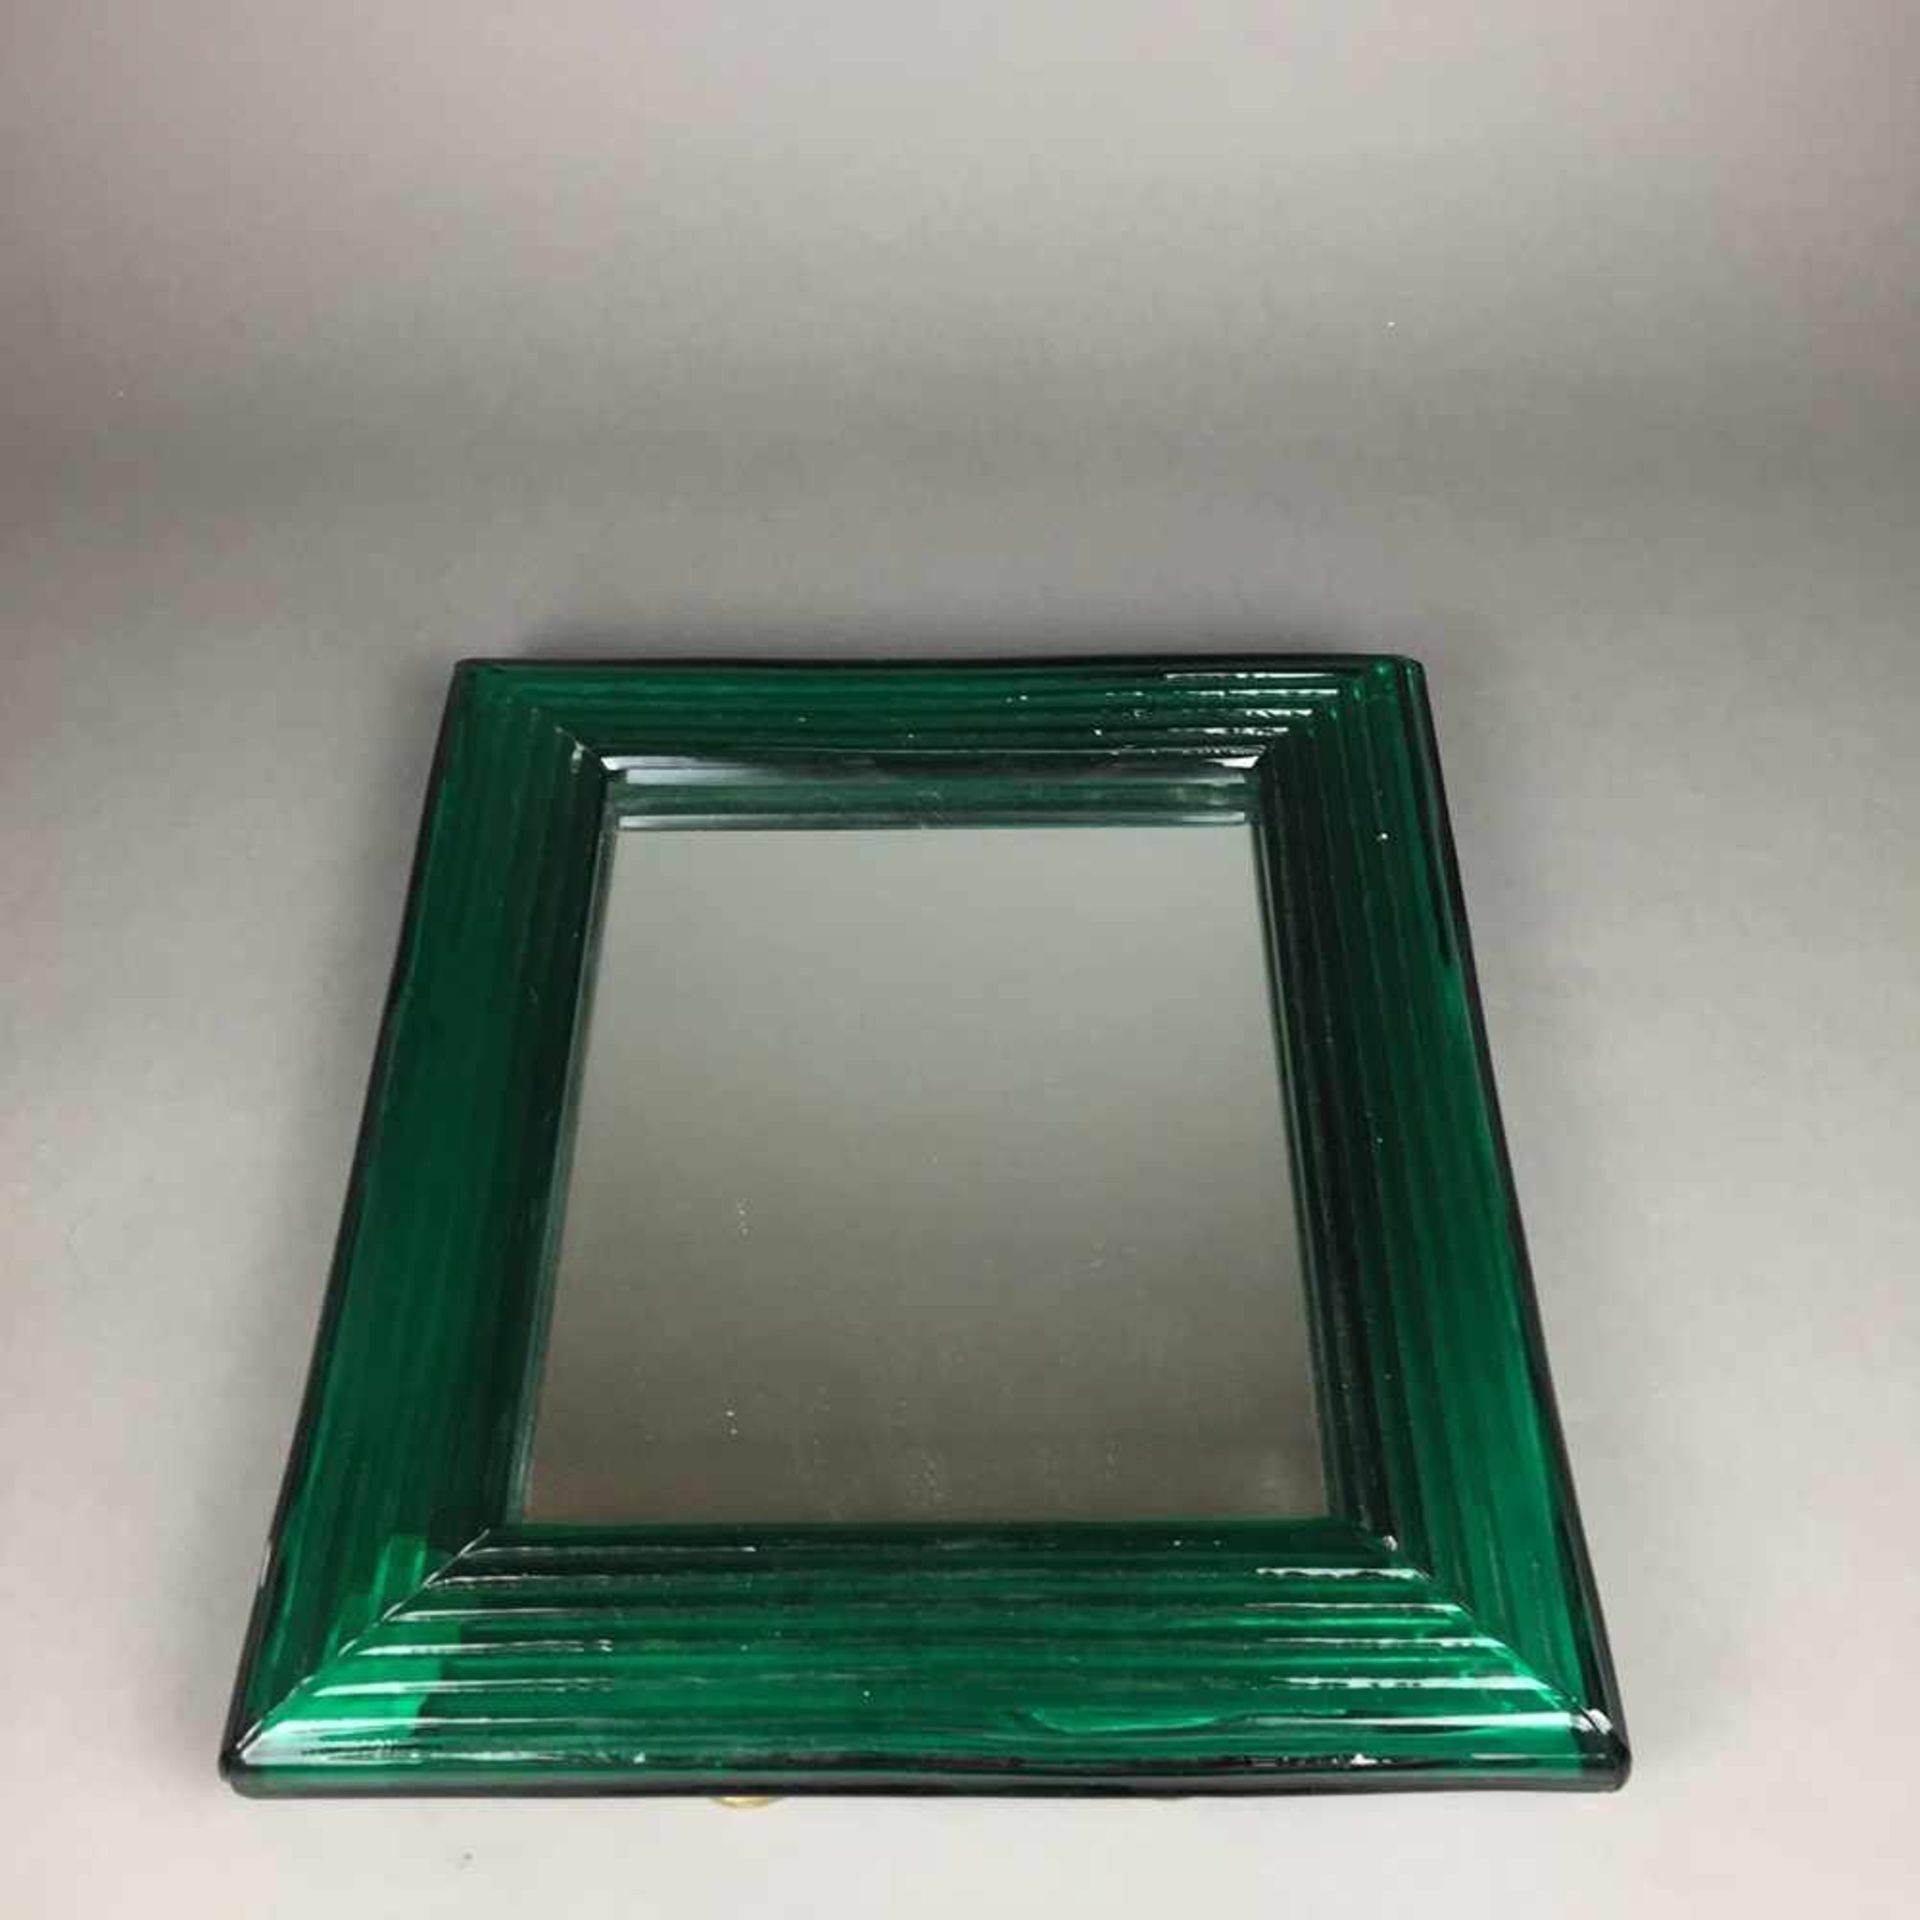 Tischspiegel - schwerer Standspiegel mit ausklappbarem Metallständer, grün getönter geriefelter